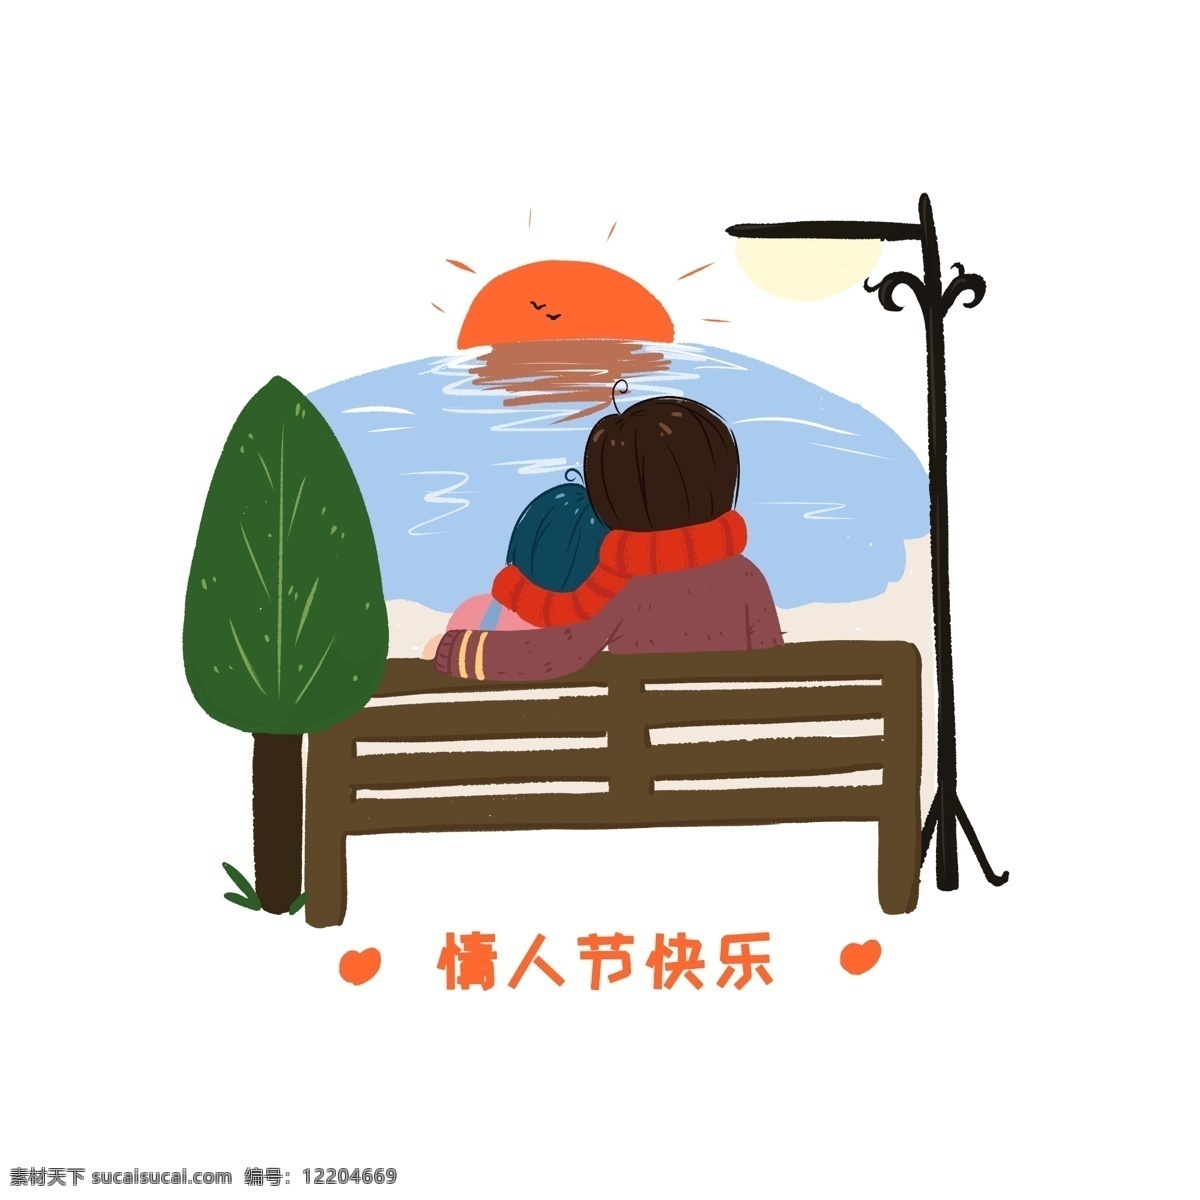 情人节 看 日出 情侣 人物 插画 绿色的树木 情人节快乐 红色的太阳 黑色的路灯 棕色的凳子